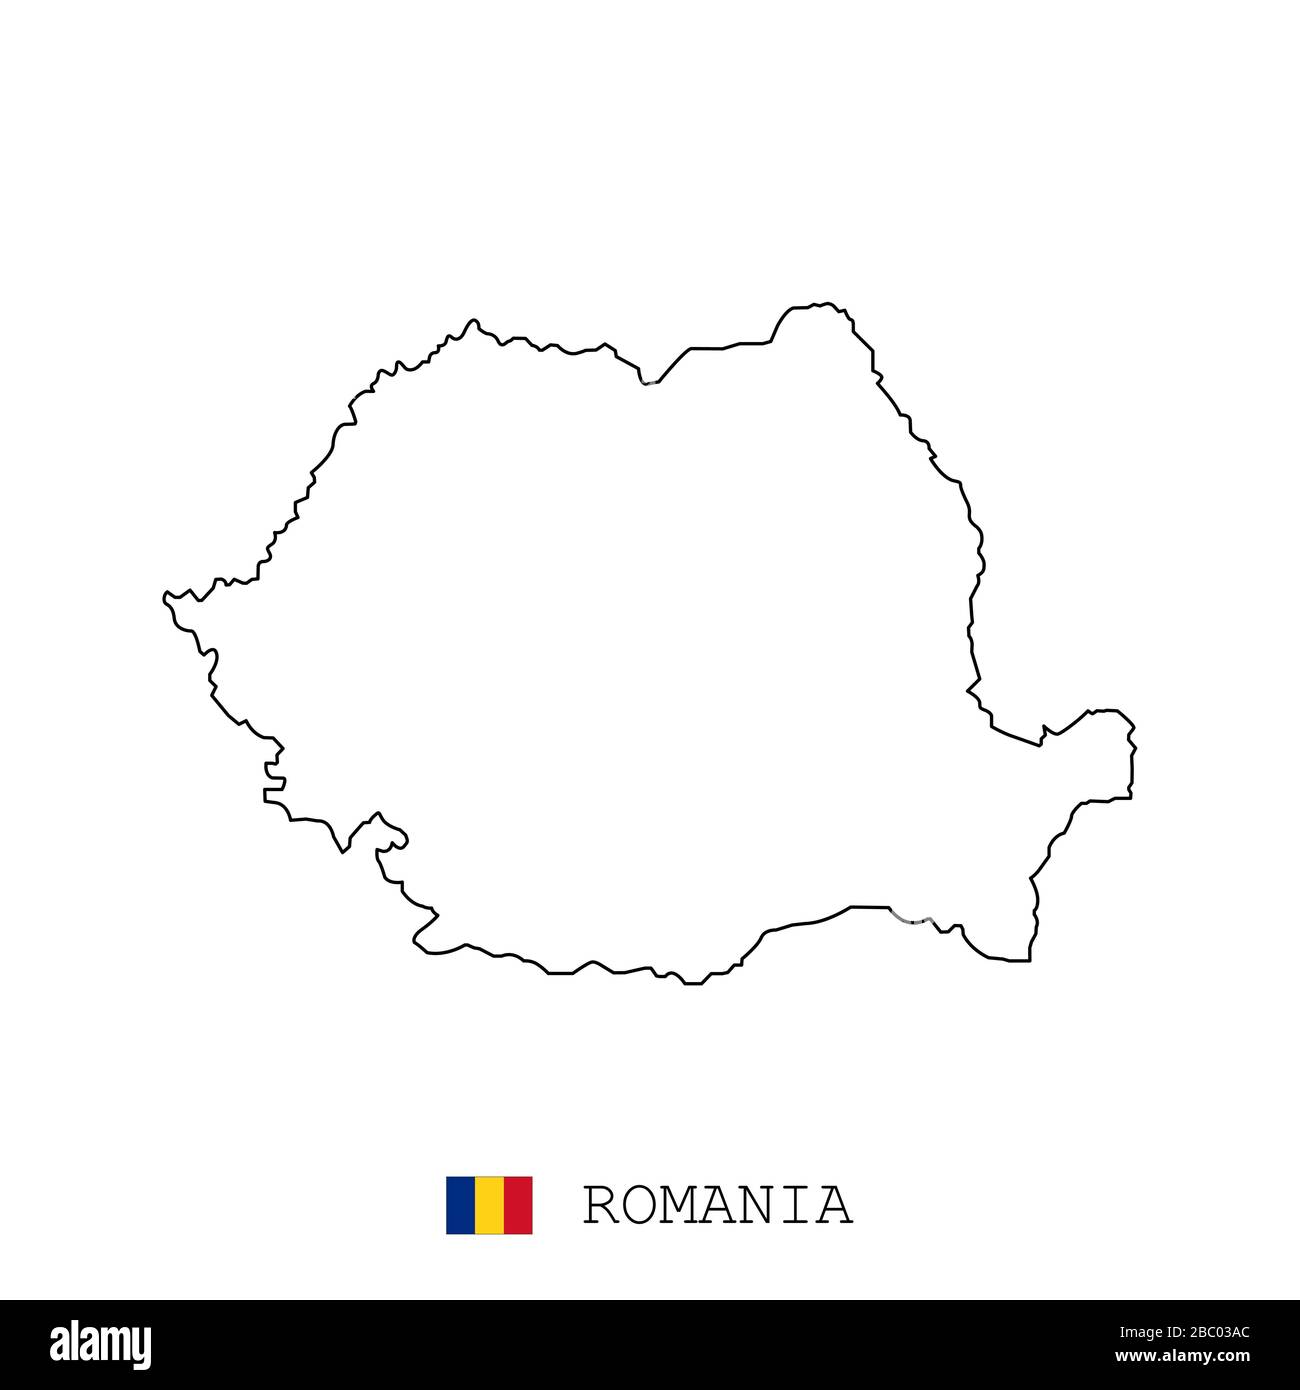 Romania, linea di mappa rumena, vettore sottile lineare. Romania, Romania semplice mappa e bandiera. Illustrazione Vettoriale